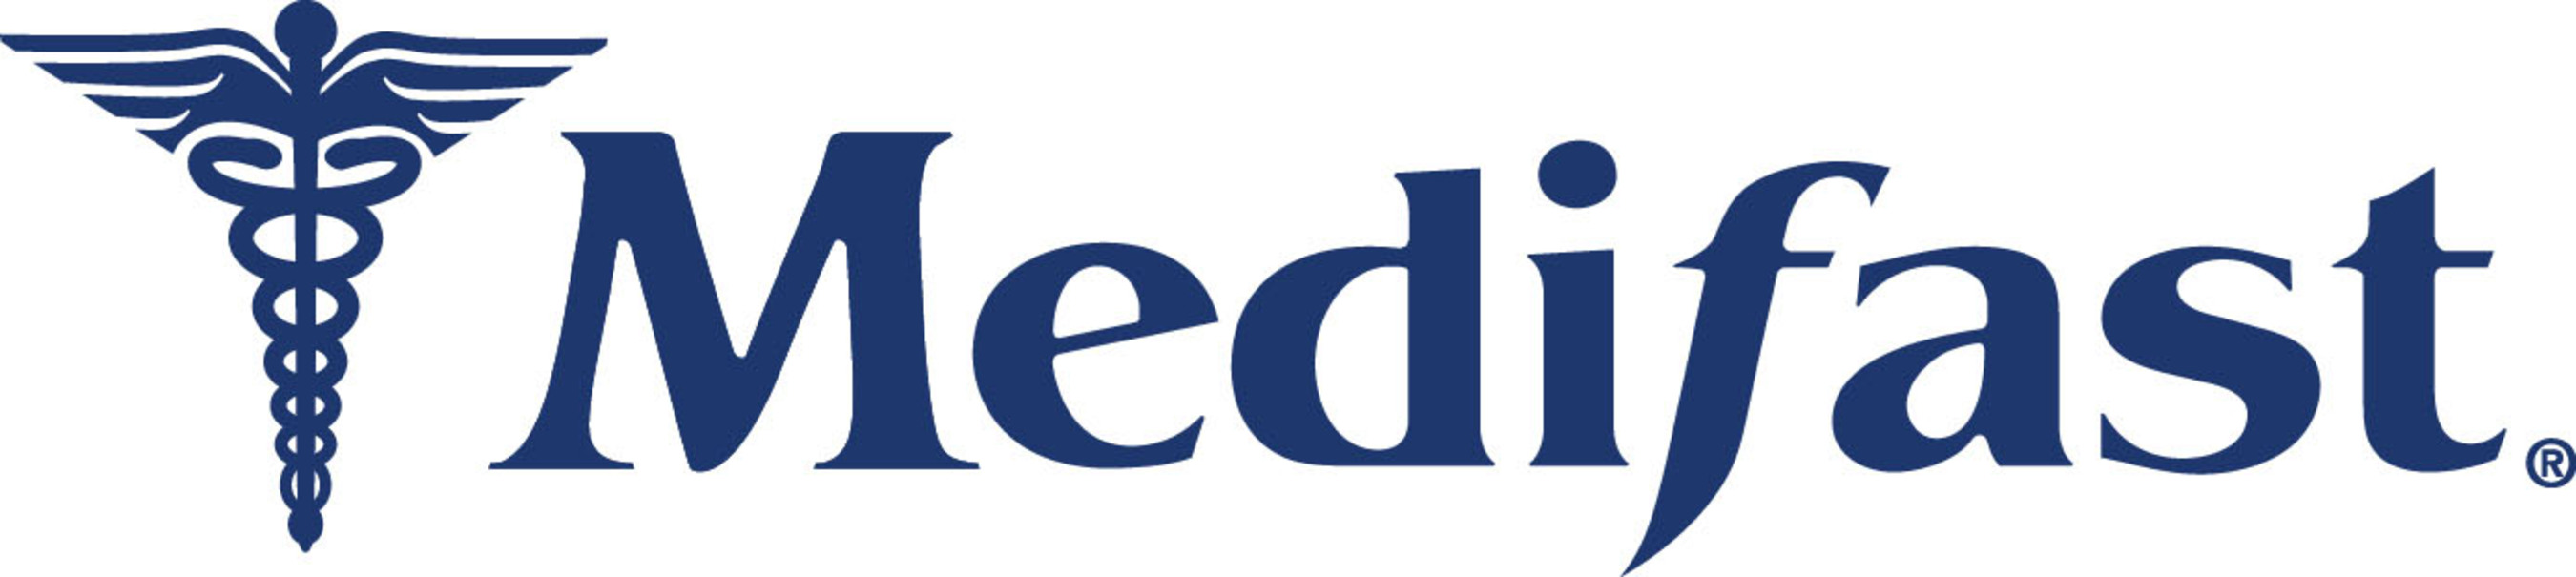 Medifast logo. (PRNewsFoto/Medifast, Inc.) (PRNewsFoto/)